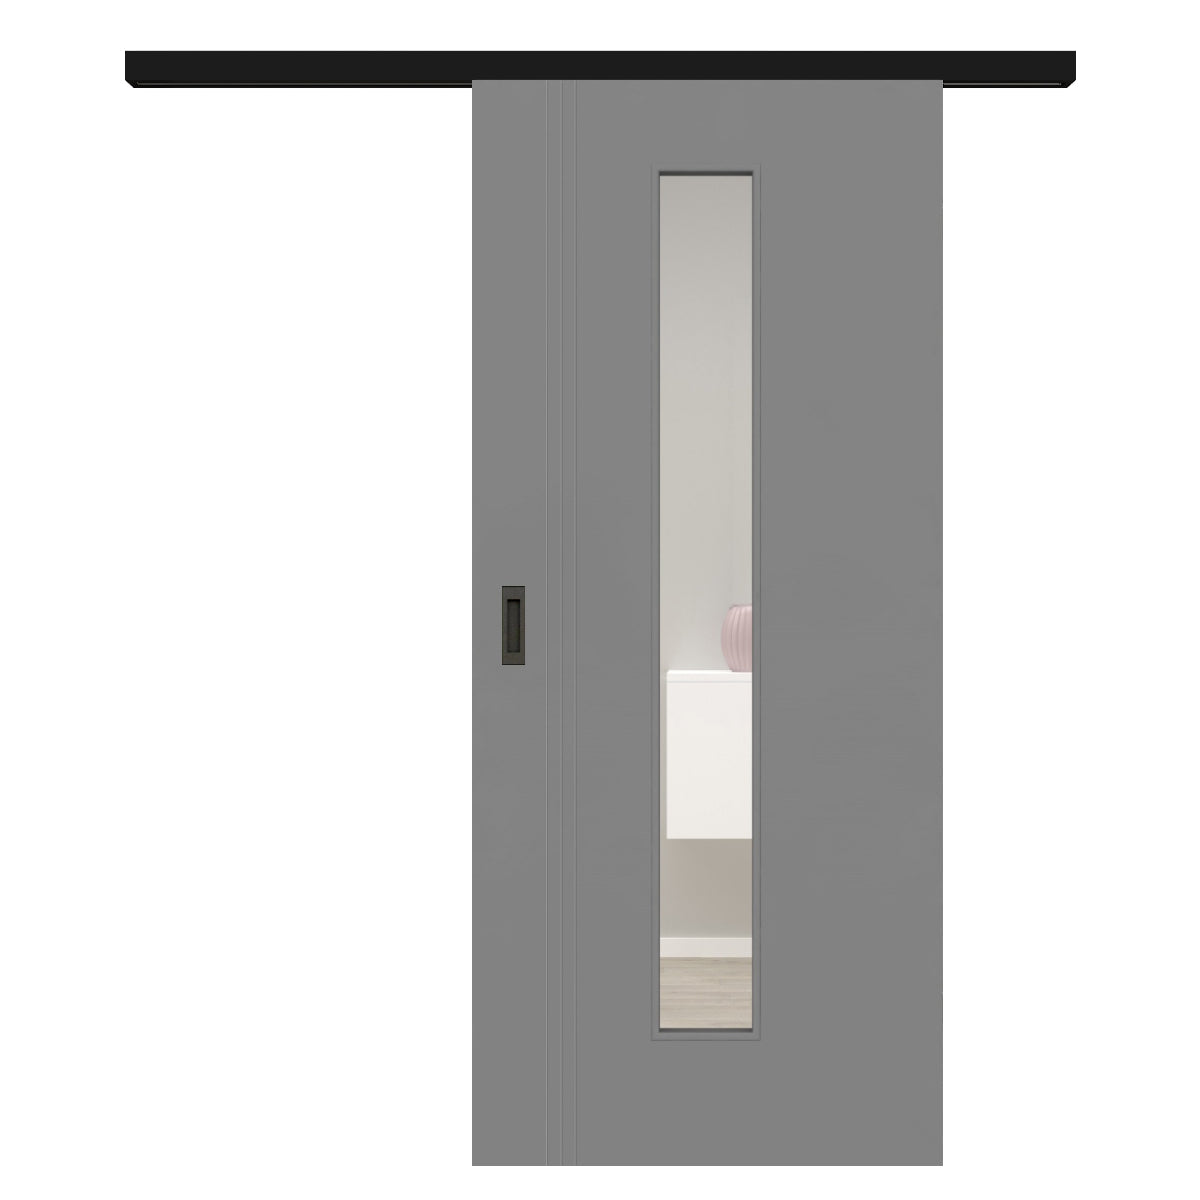 Schiebetür für Set mit schwarzem Laufkasten mit Lichtausschnitt grau 3 Rillen aufrecht Schlosseite - Modell Designtür VS37LAM